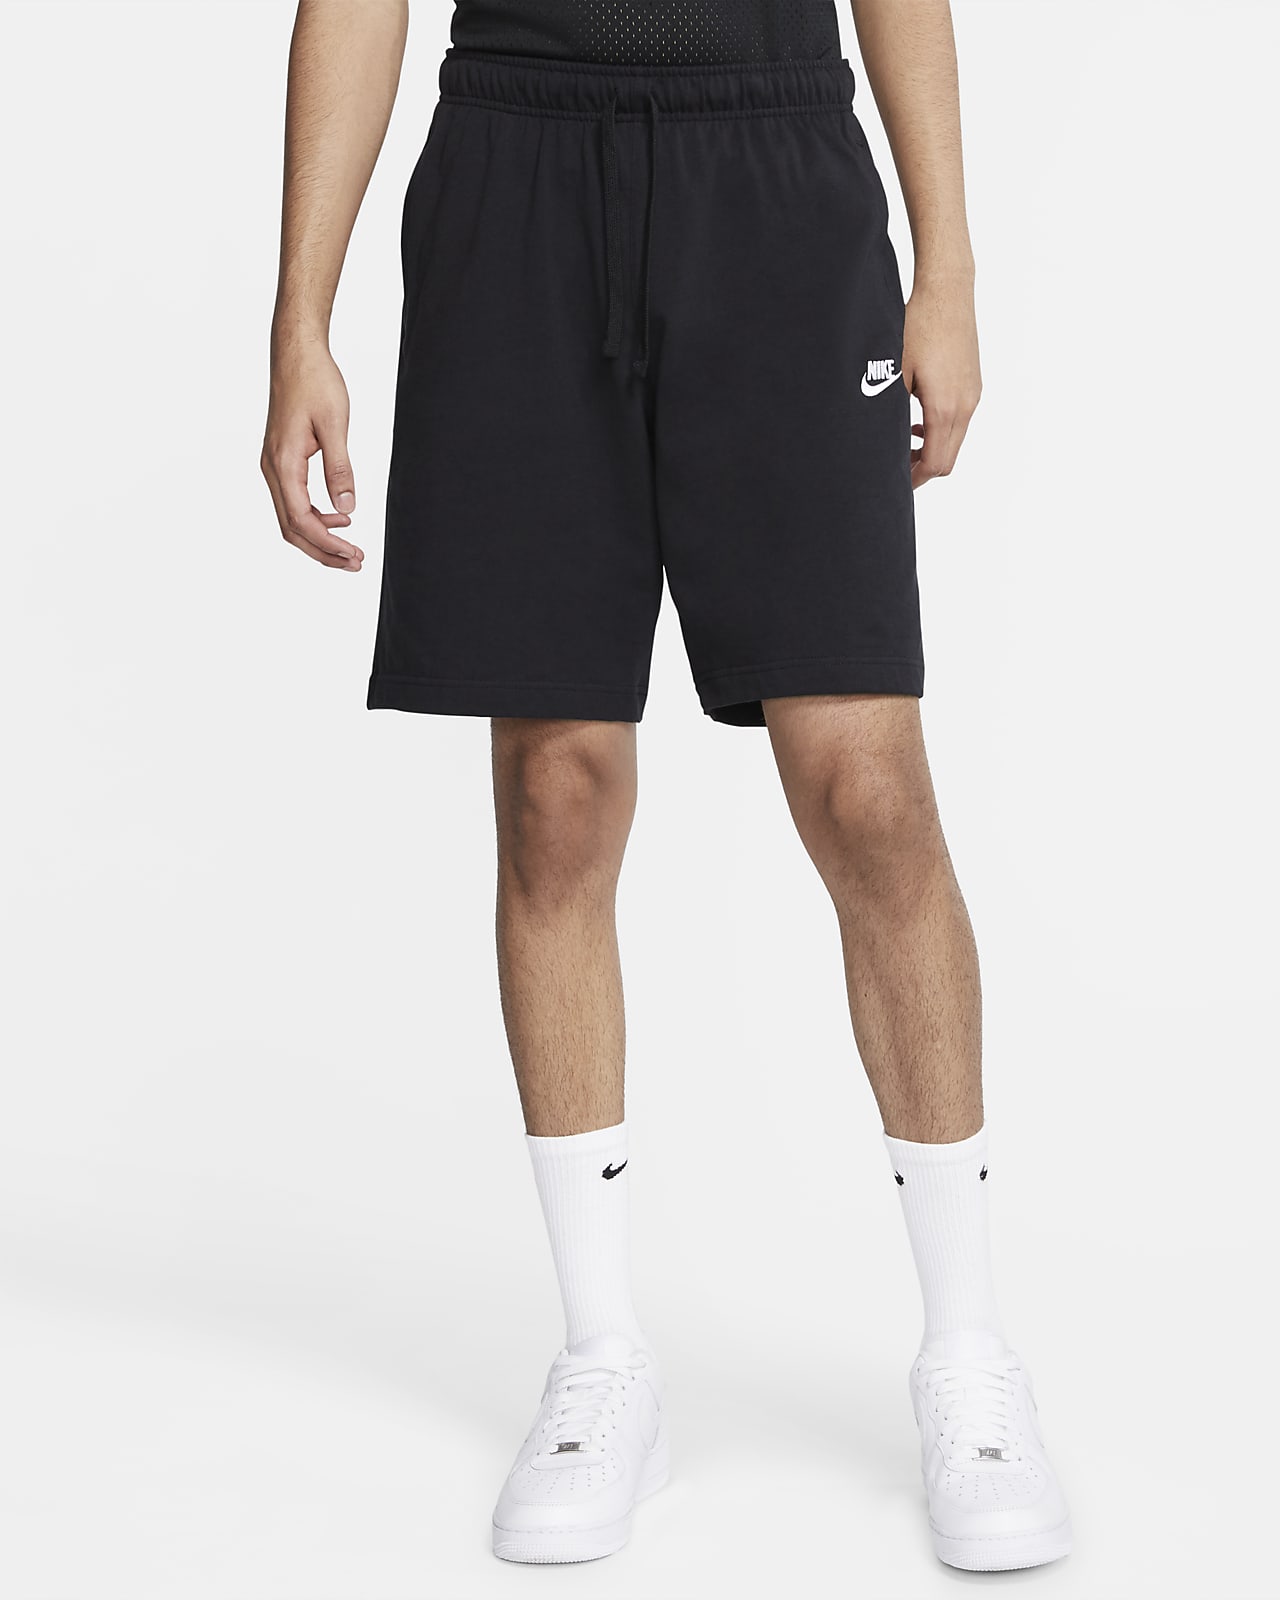 apuntalar persona que practica jogging No autorizado Nike Sportswear Club Pantalón corto - Hombre. Nike ES